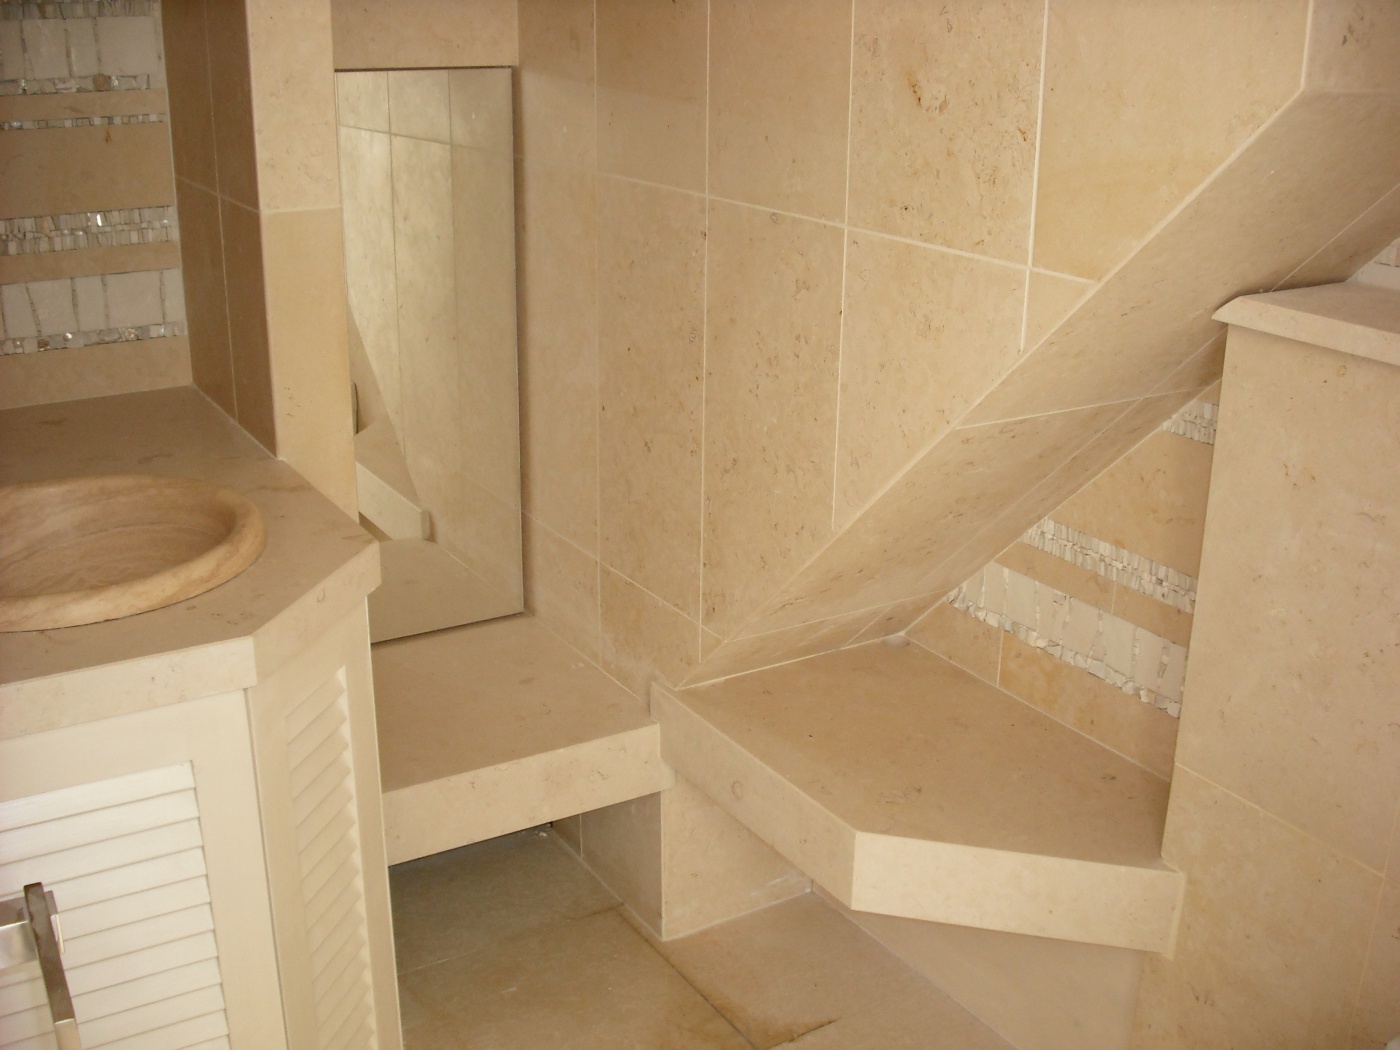 Granite Salle de bains en Crema Luna.
Vente et livraison à La Londe Les Maures (Var)